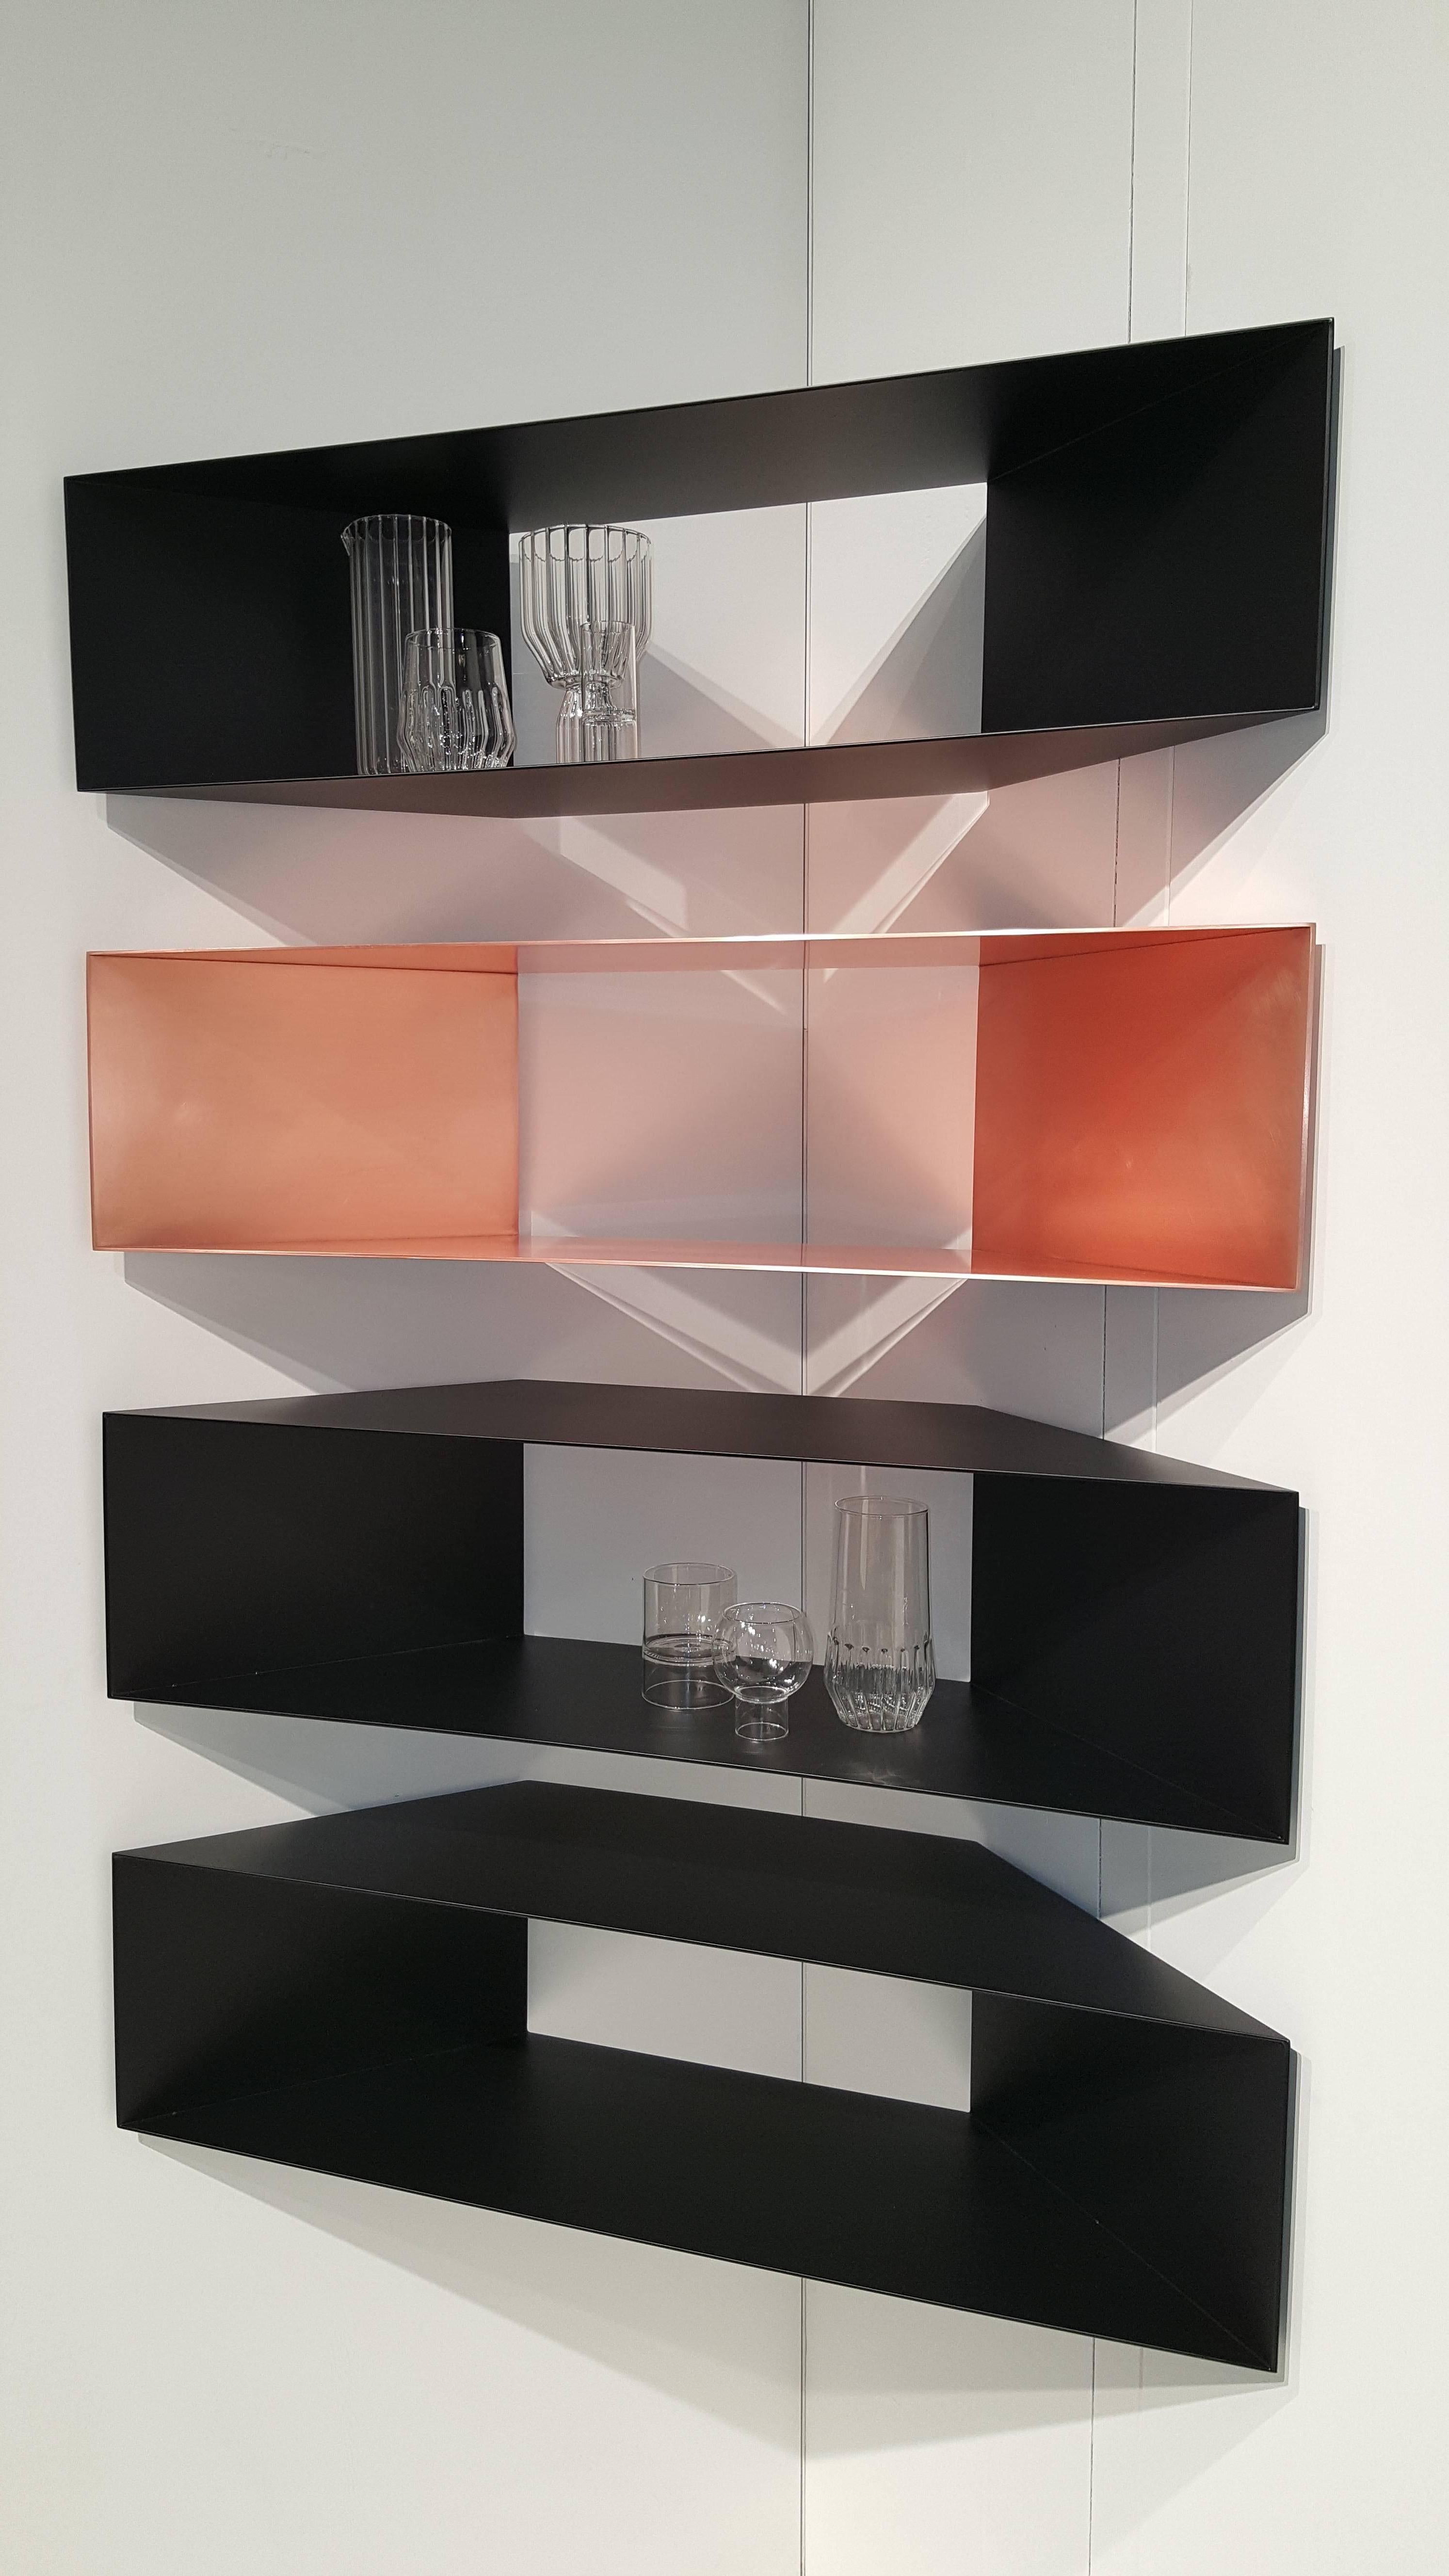 Dieses moderne, skulpturale, minimalistische Eckregal aus Kupfermetall ist perfekt für jeden Raum, sei es ein Wohnzimmer, ein Büro oder ein Badezimmer.

Vorrätig: Diese minimalistischen Kupferregale, die einzeln oder in einer Reihe aufgestellt